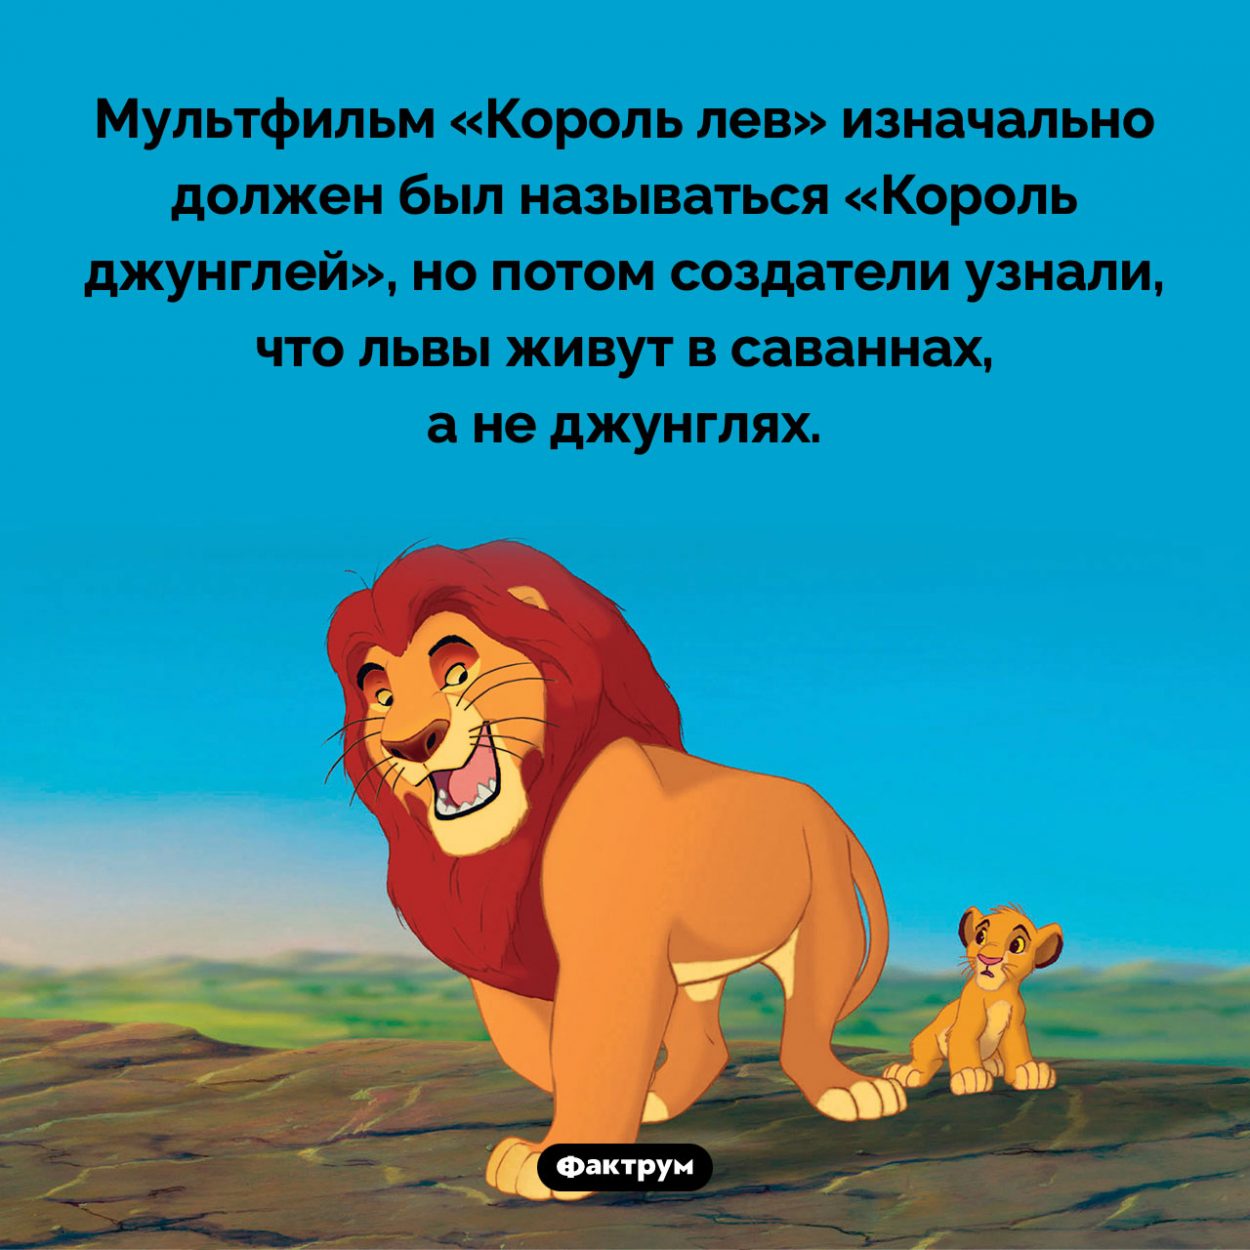 Король джунглей. Мультфильм «Король лев» изначально должен был называться «Король джунглей», но потом создатели узнали, что львы живут в саваннах, а не джунглях.